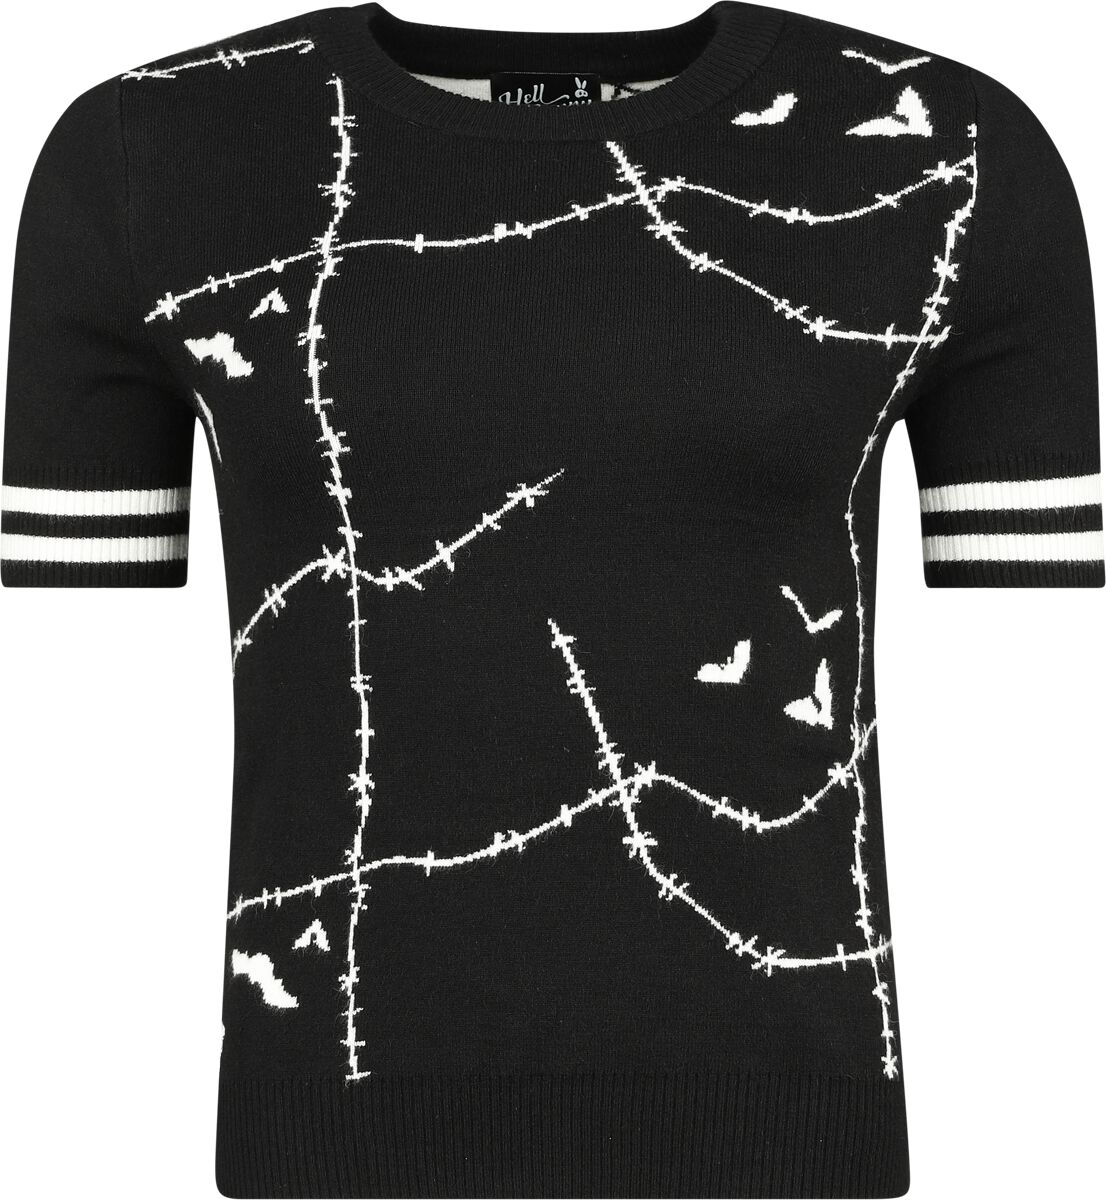 Hell Bunny Stitches Top T-Shirt schwarz weiß in XS